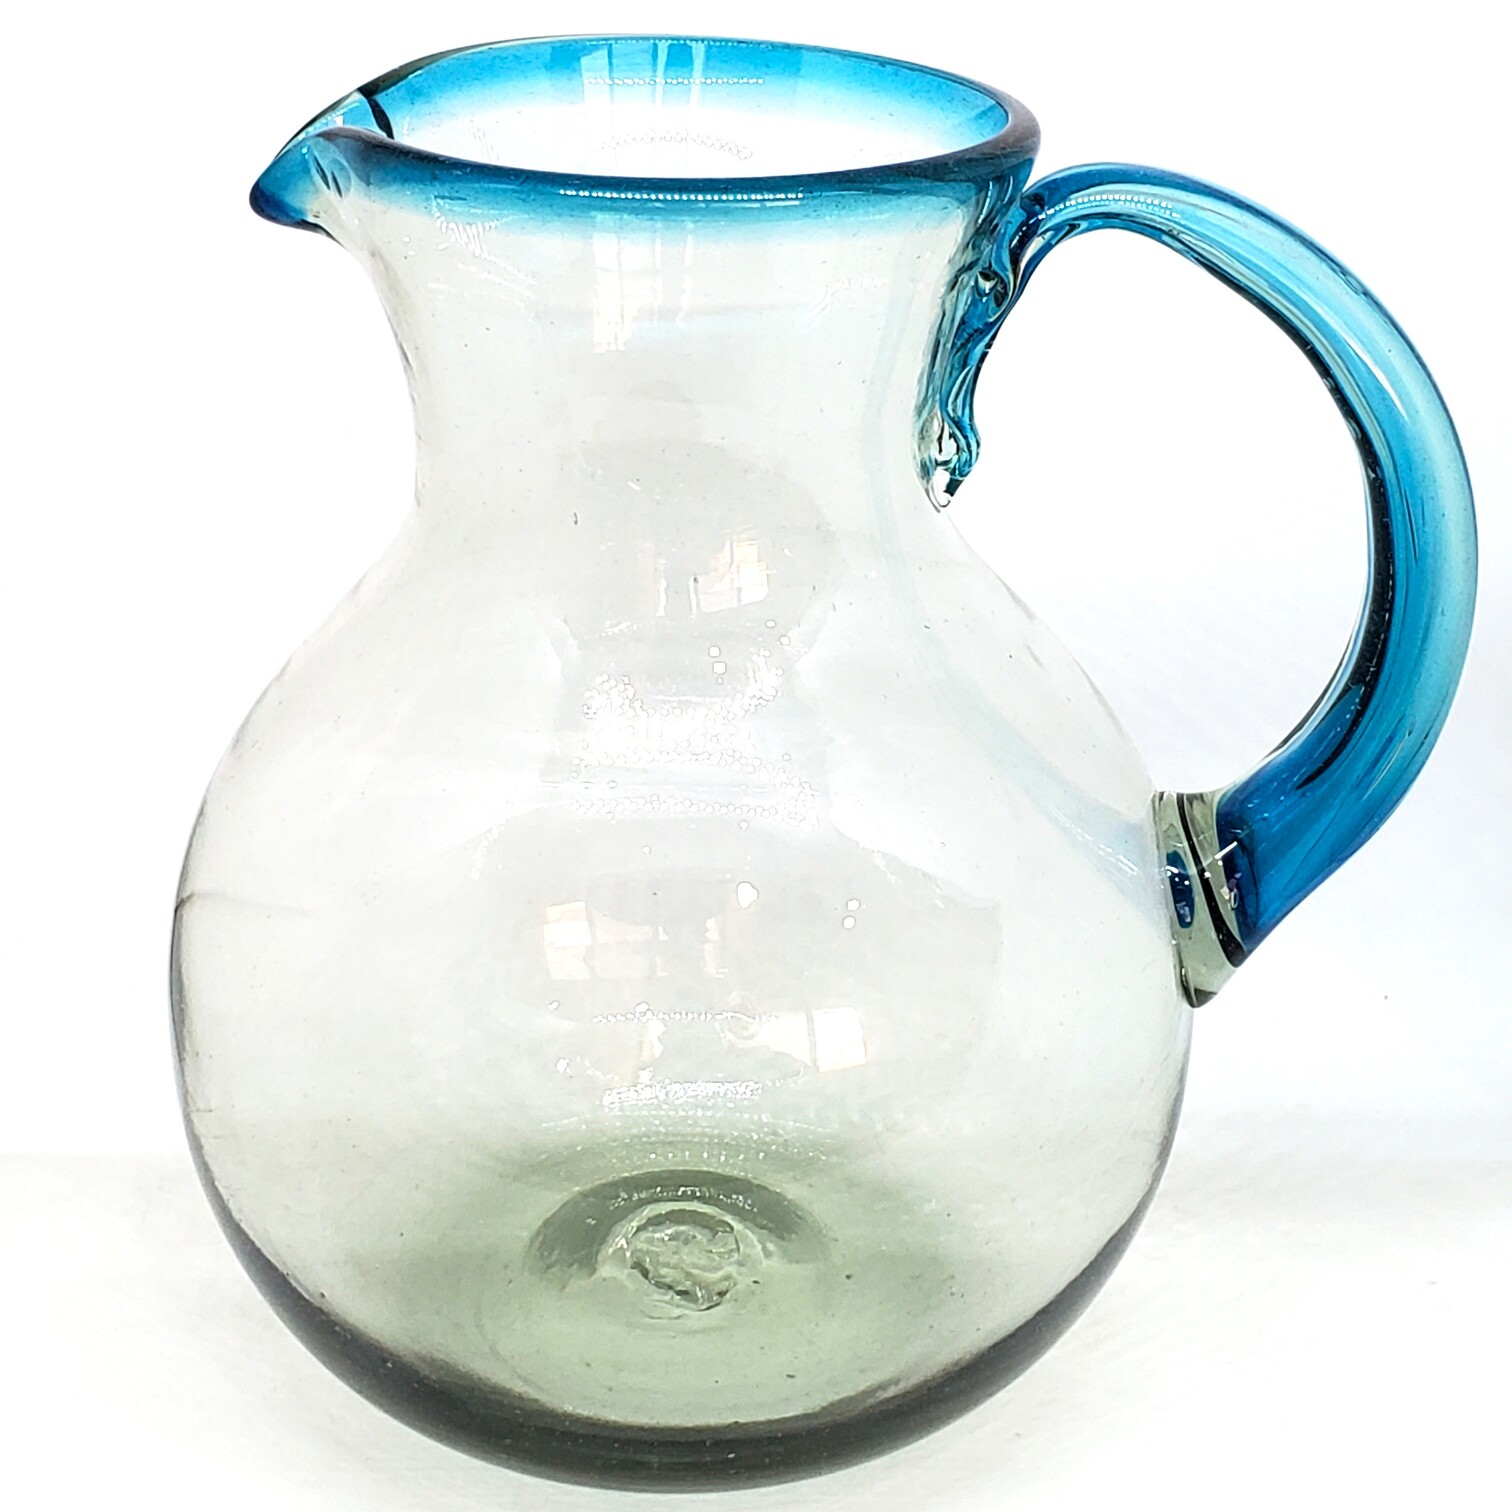 Novedades / Jarra de vidrio soplado con borde azul aqua / Ésta moderna jarra viene decorada con un borde en azul aqua.